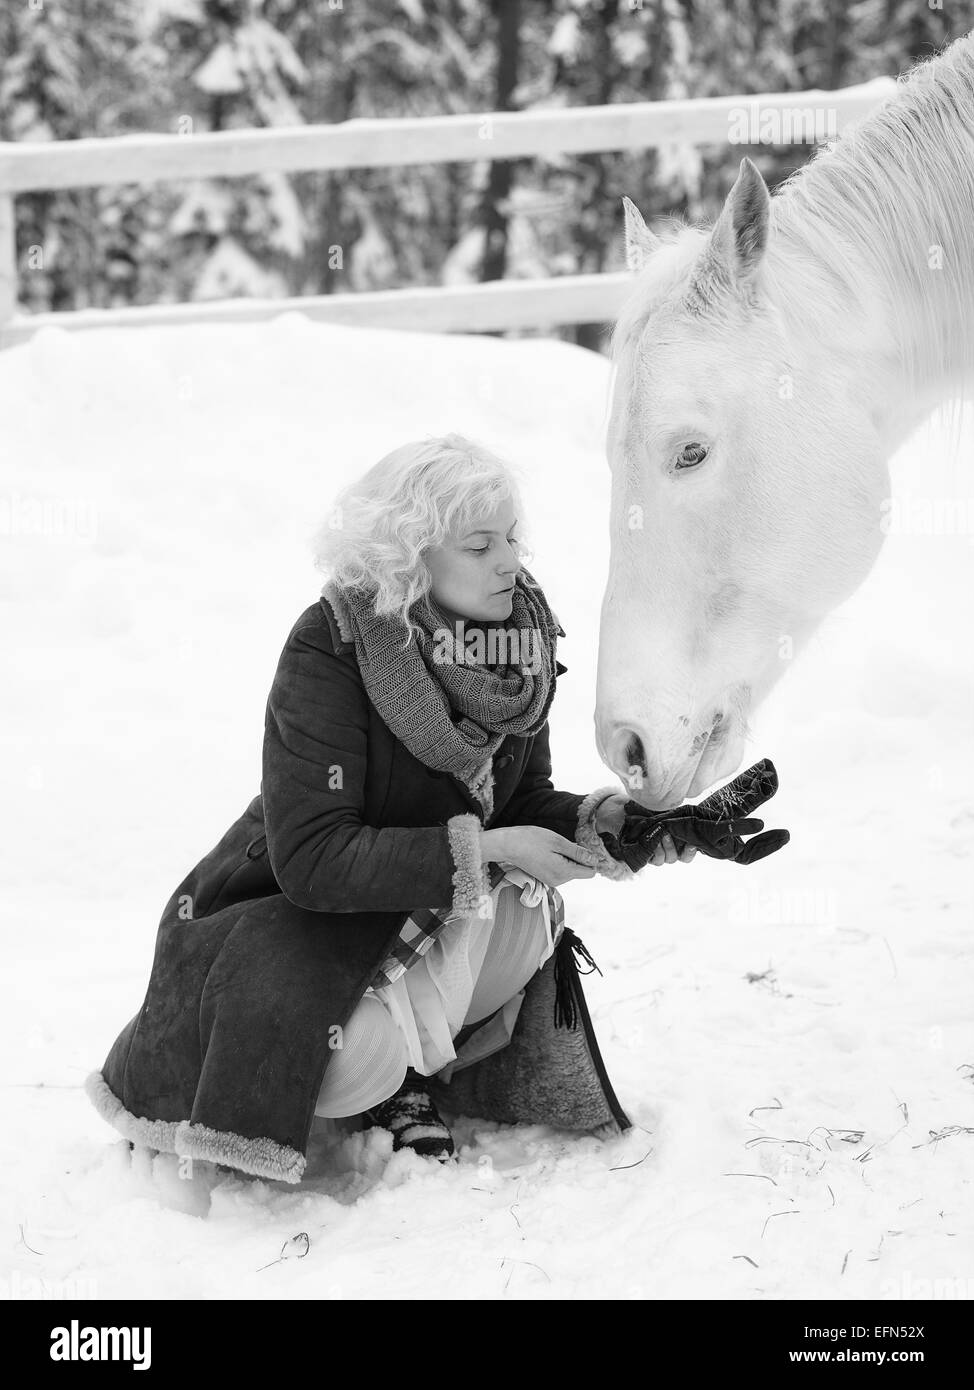 Attraente donna bionda alimenta un cavallo bianco, coperto giornata invernale, immagine in bianco e nero Foto Stock